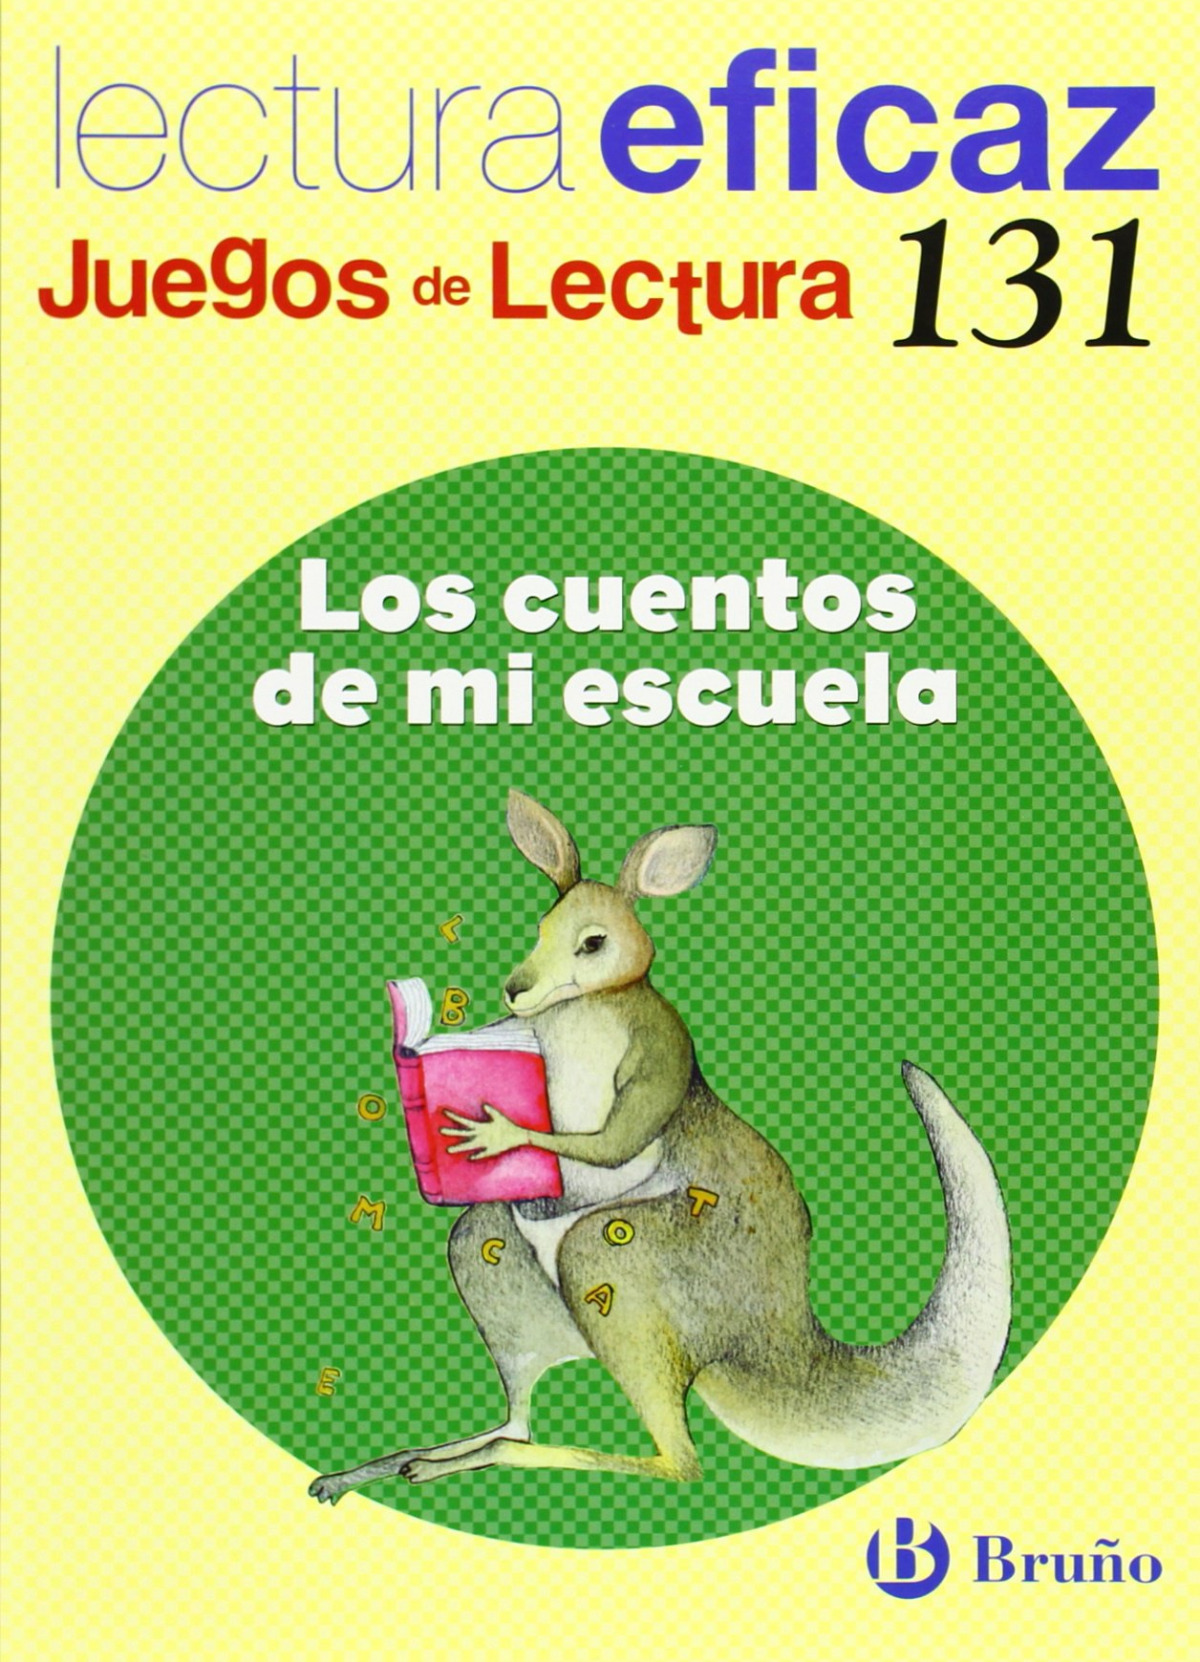 (n)/131.cuentos de mi escuela.(juegos lectura) - Alonso Gracia, Ángel/Álvarez de Eulate Alberdi, Carlos Miguel